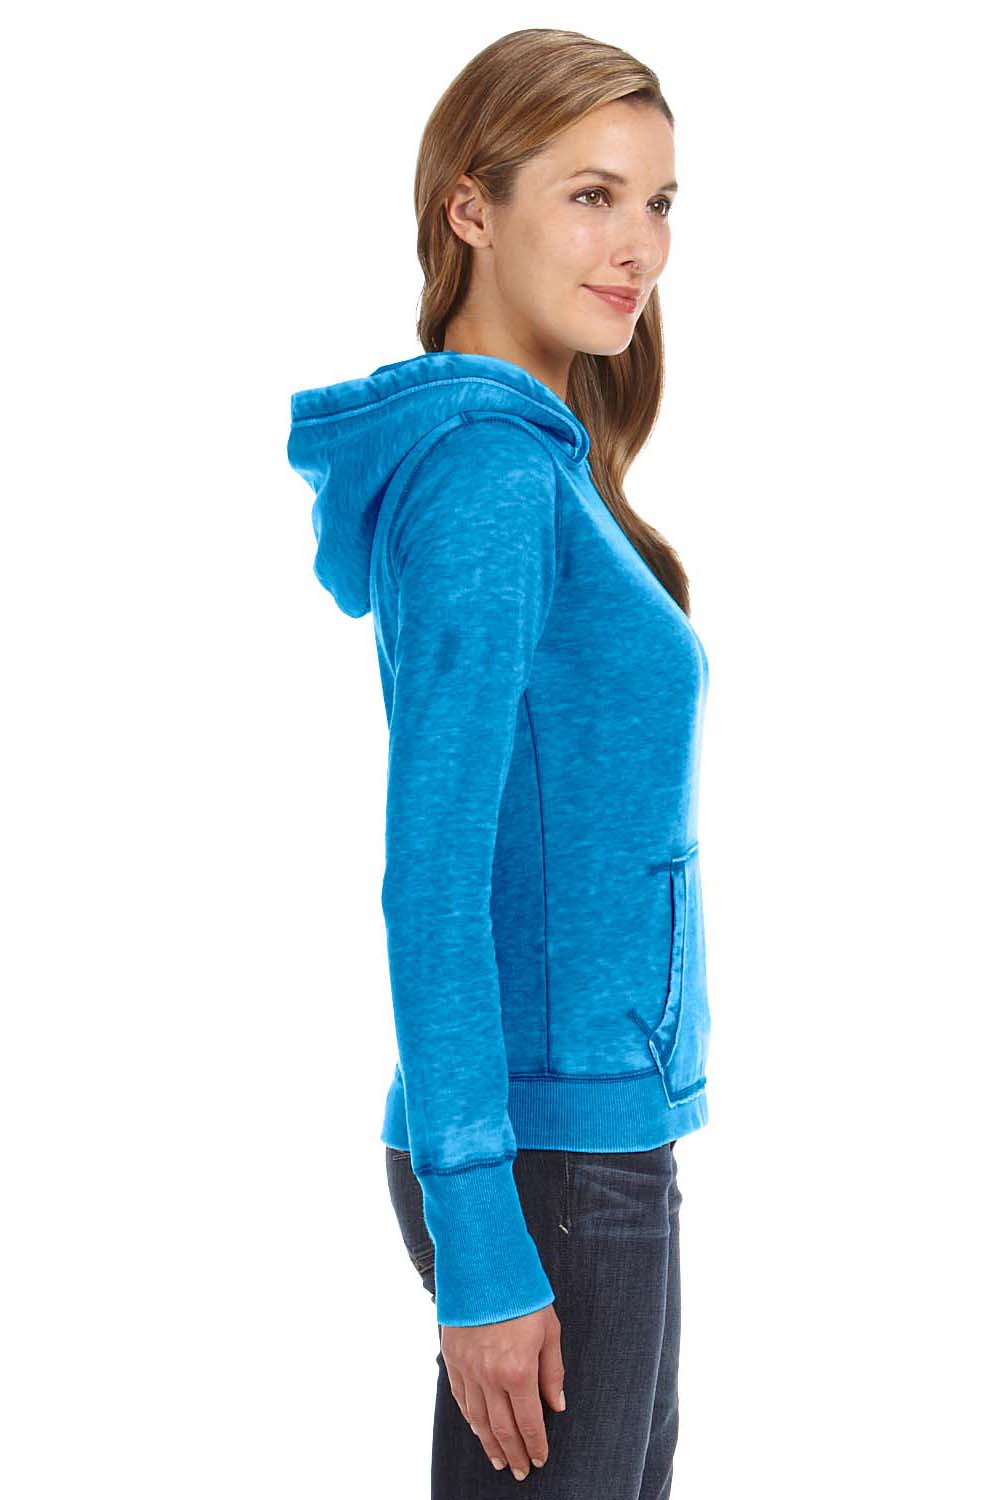 J America JA8912 Womens Zen Burnout Fleece Hooded Sweatshirt Hoodie Oceanberry Blue Side